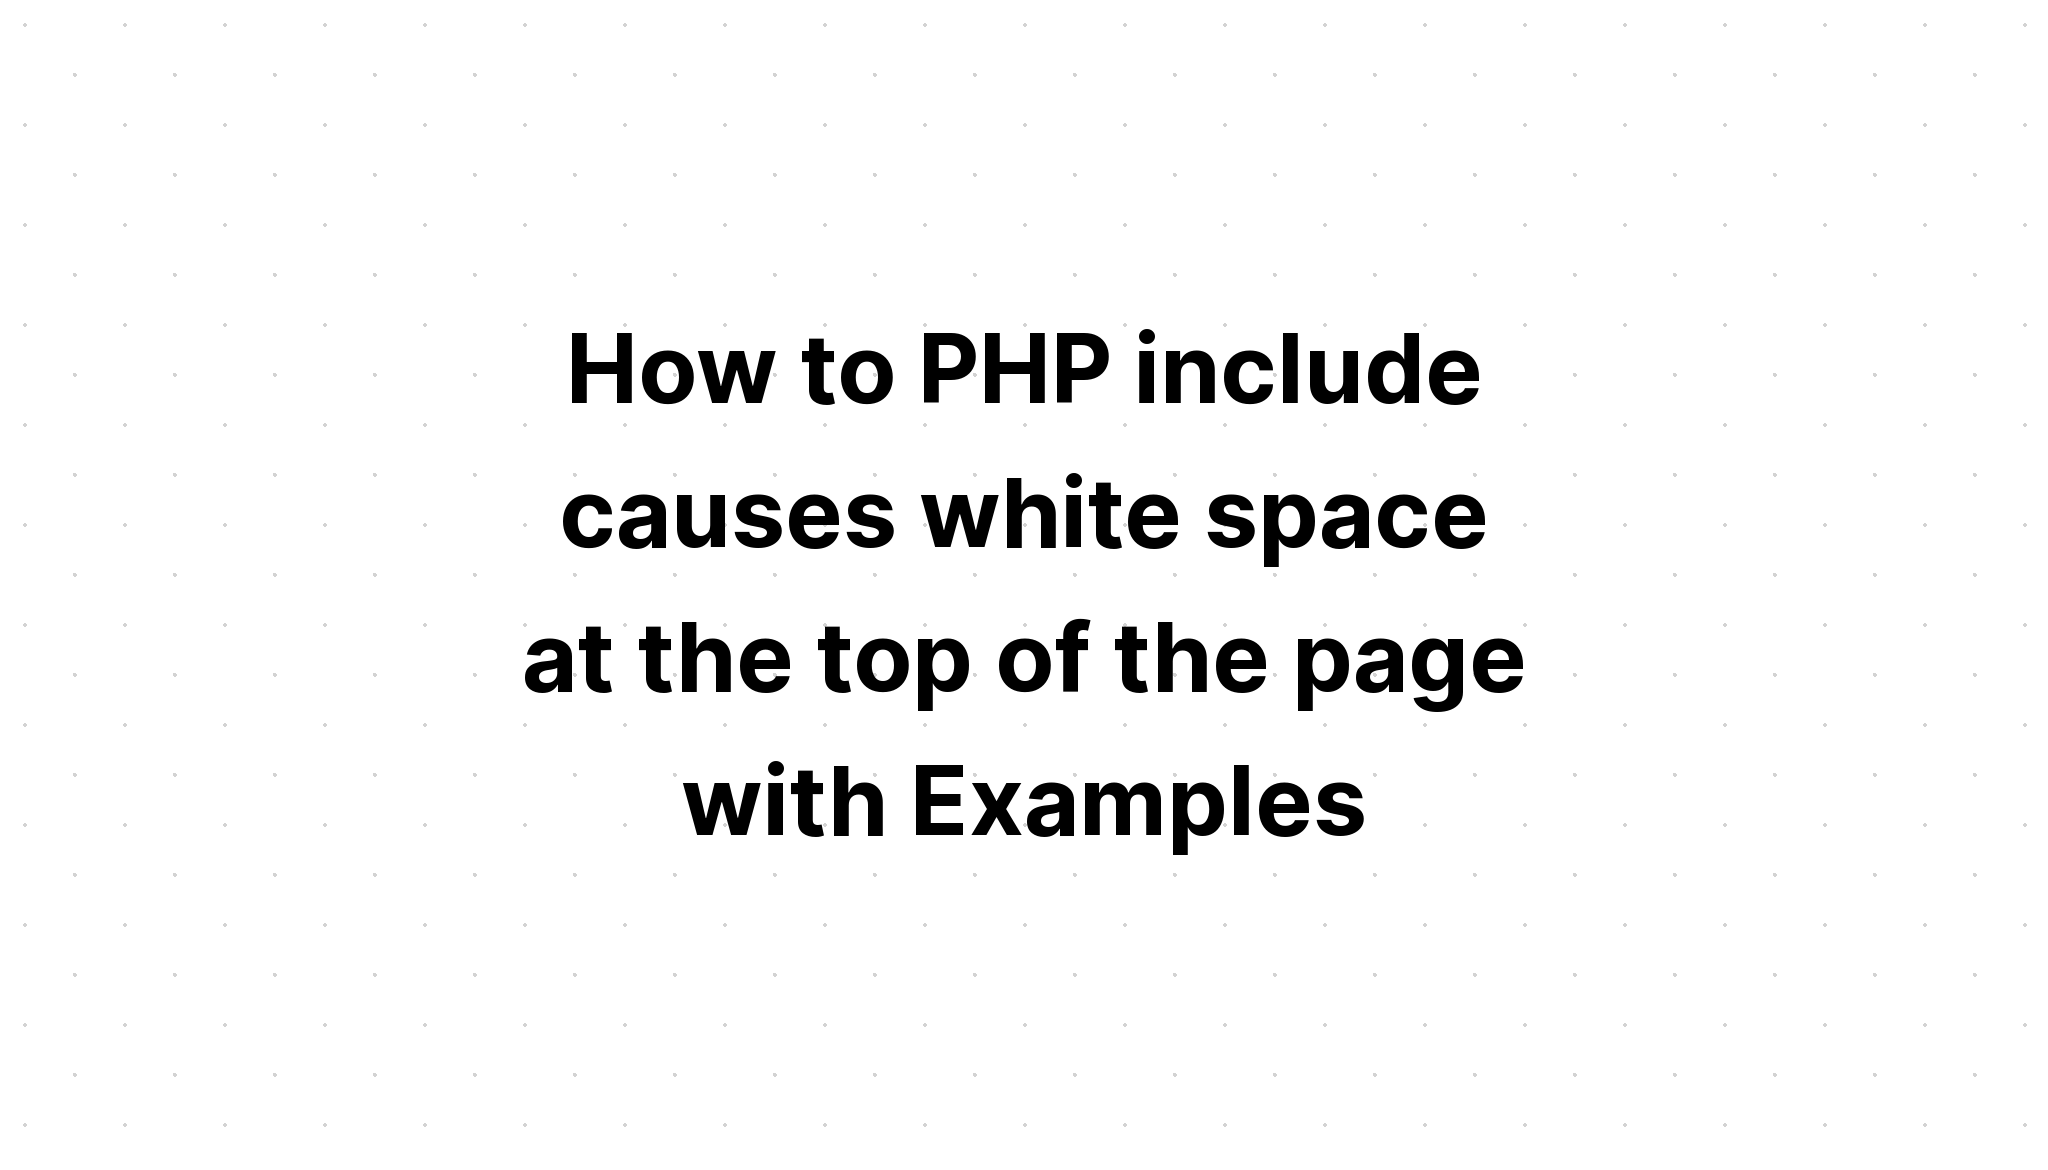 Cara PHP memasukkan penyebab spasi putih di bagian atas halaman dengan Contoh